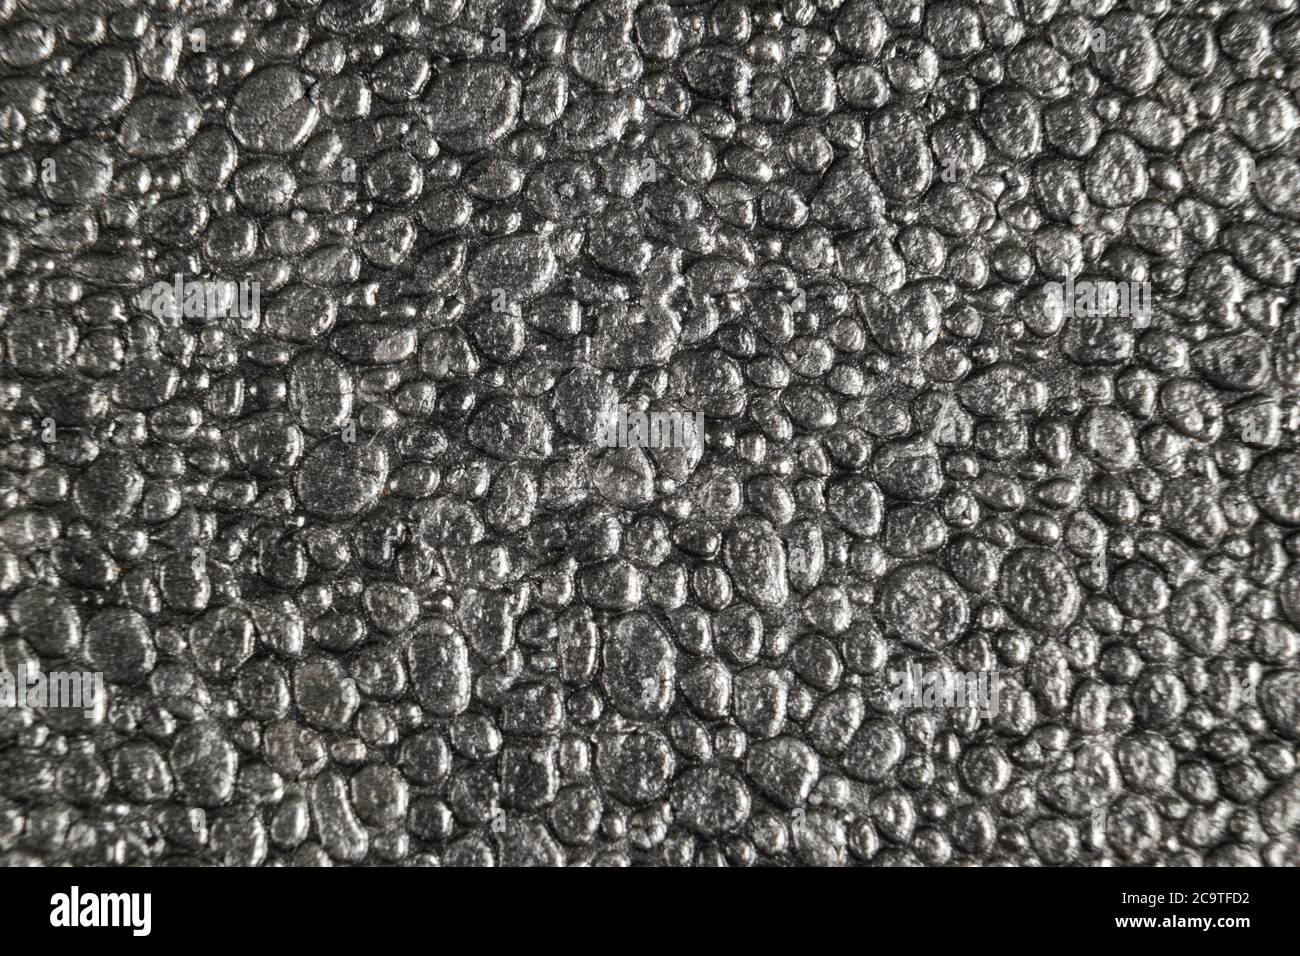 Grau Styropor Hintergrund Textur Nahaufnahme. Makroaufnahme Textur aus  grauem Polystyrol-Schaum oder Styropor Muster Stockfotografie - Alamy